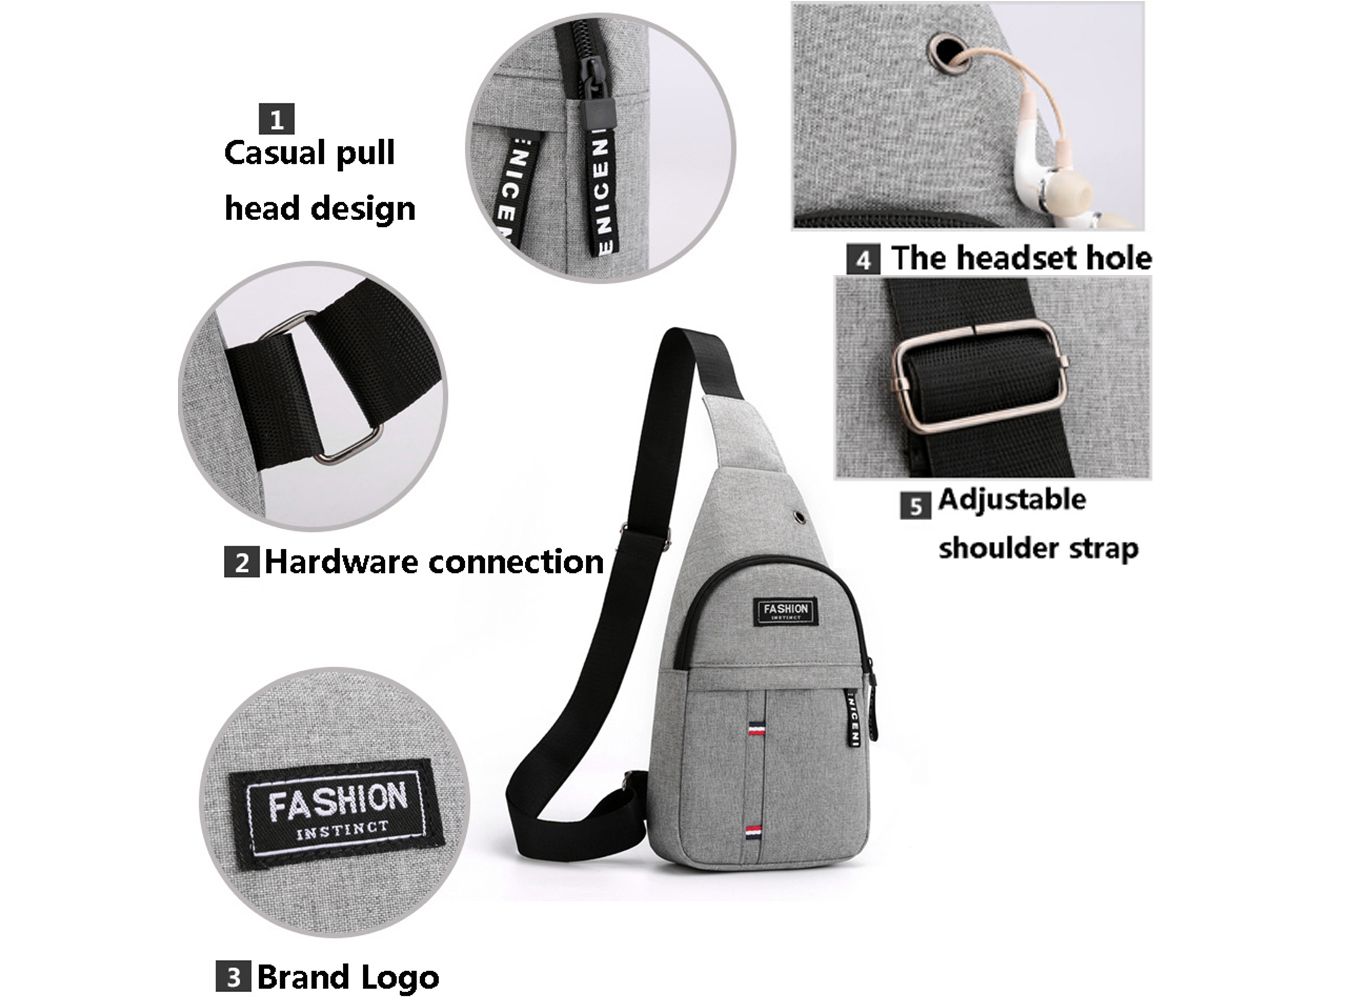 Men Fashion Multifunction Shoulder Bag Crossbody Bag On Shoulder Travel Sling Bag